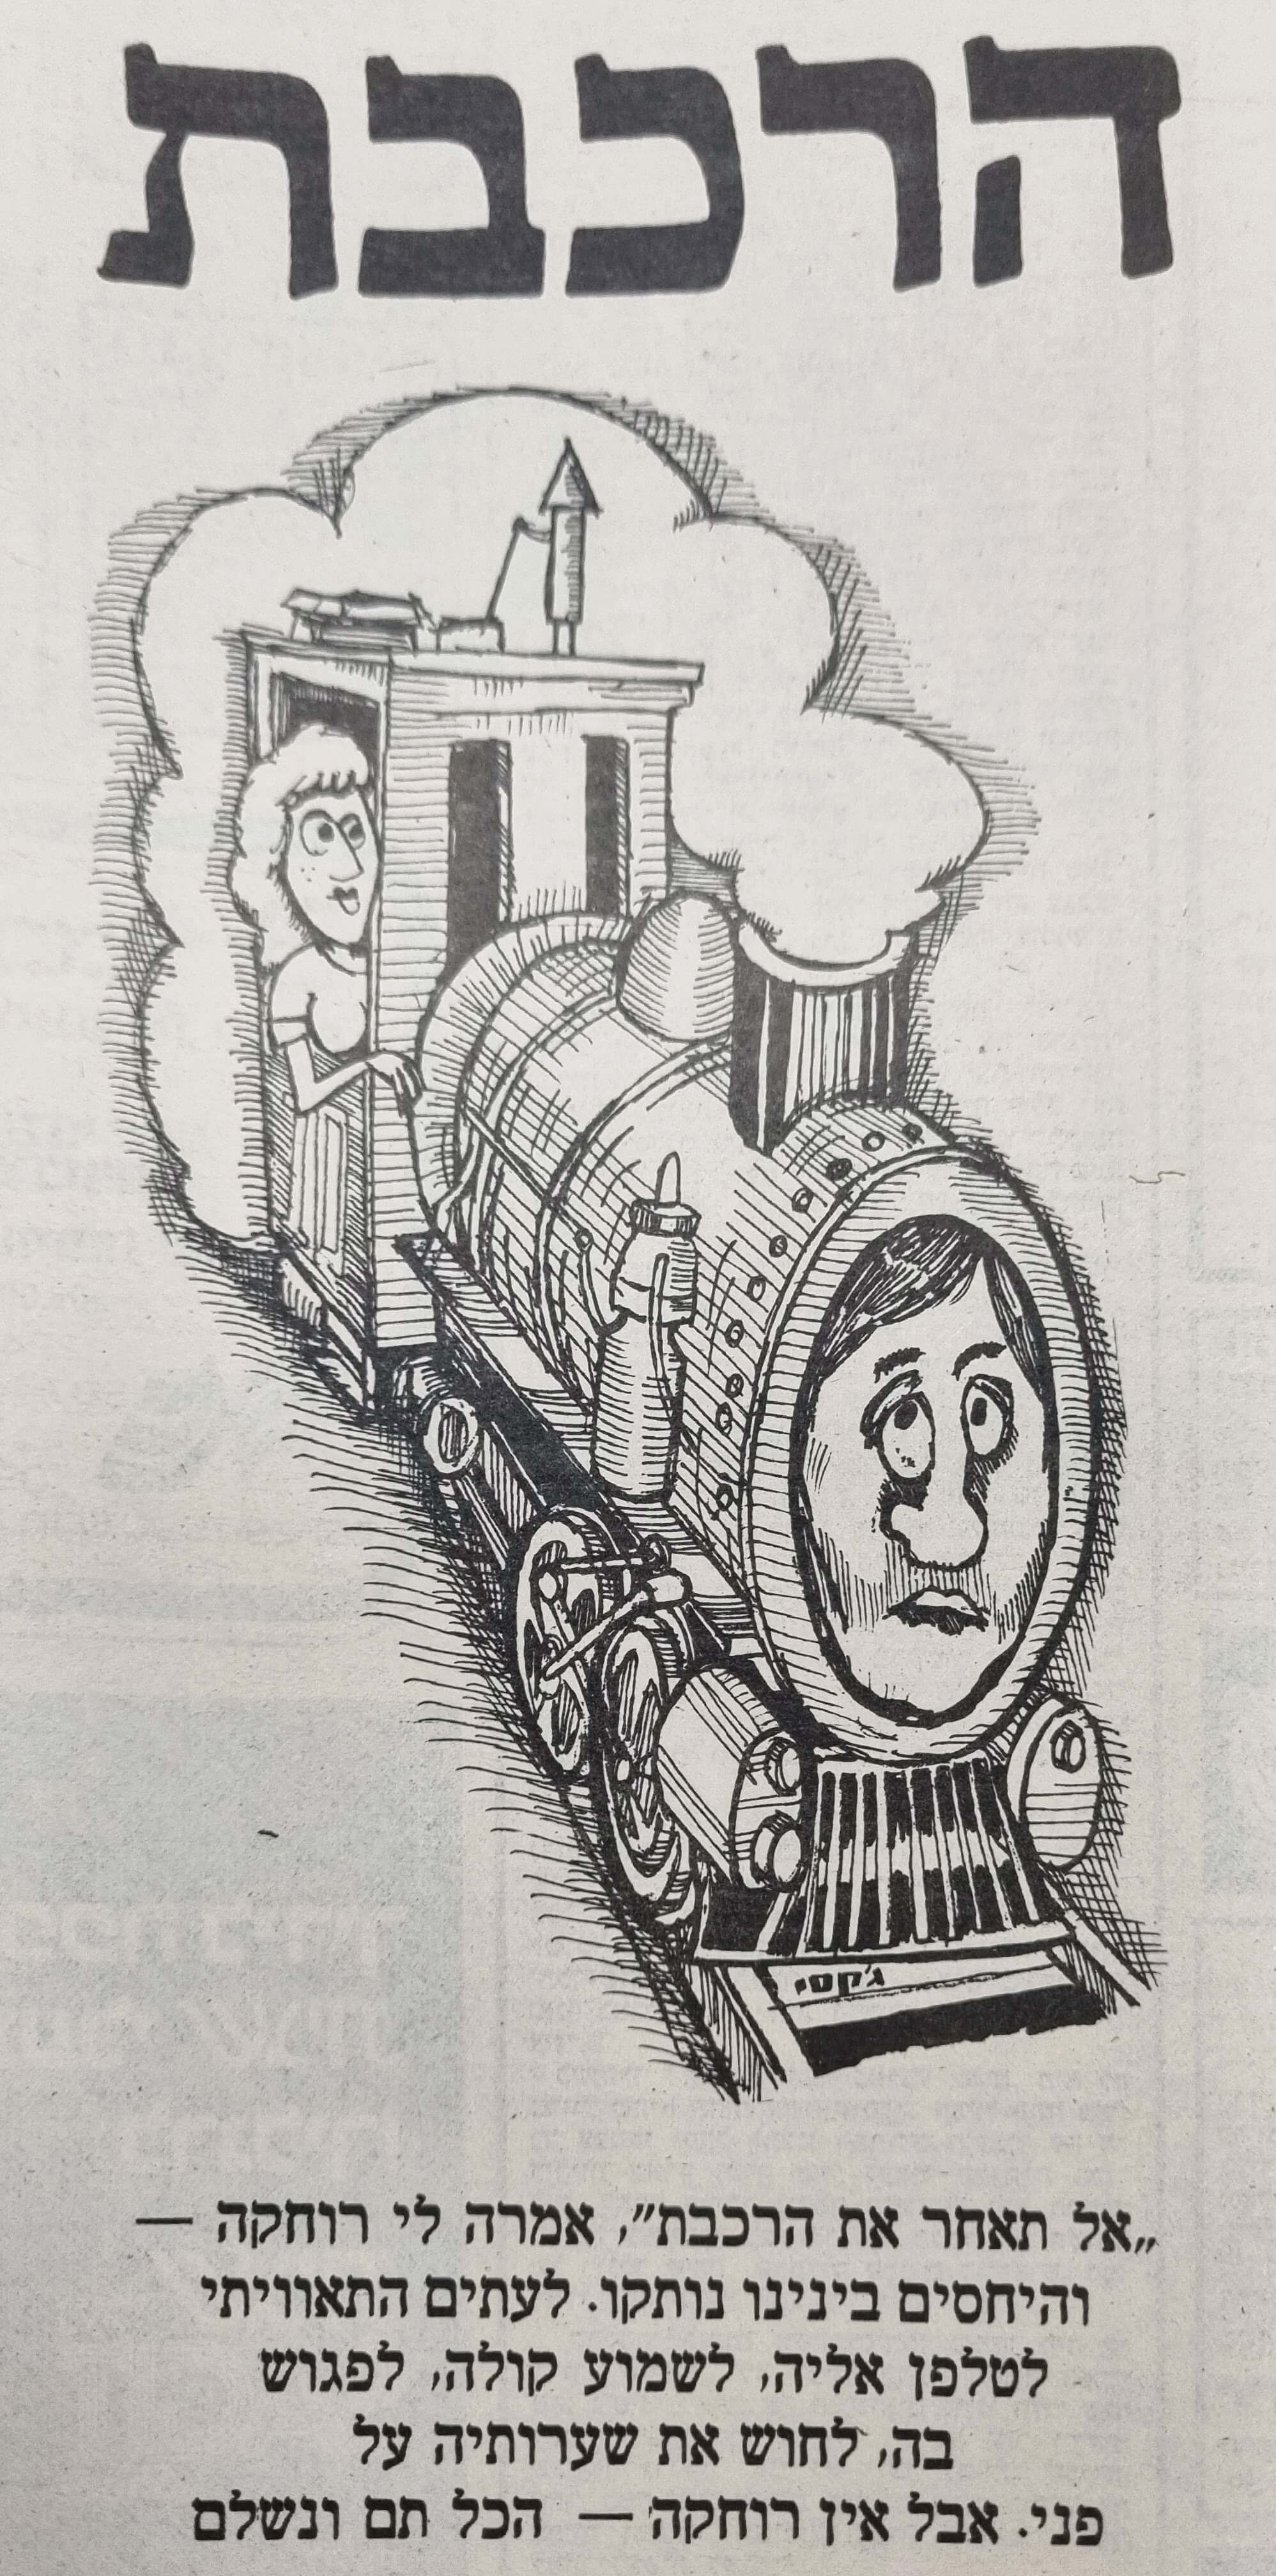 הרכבת איור של ג'קסי ג'קסון בשבועון לאישה, למדור 'סיפורים מן החיים' של עו"ד צבי לידסקי (בשנות ה-80)